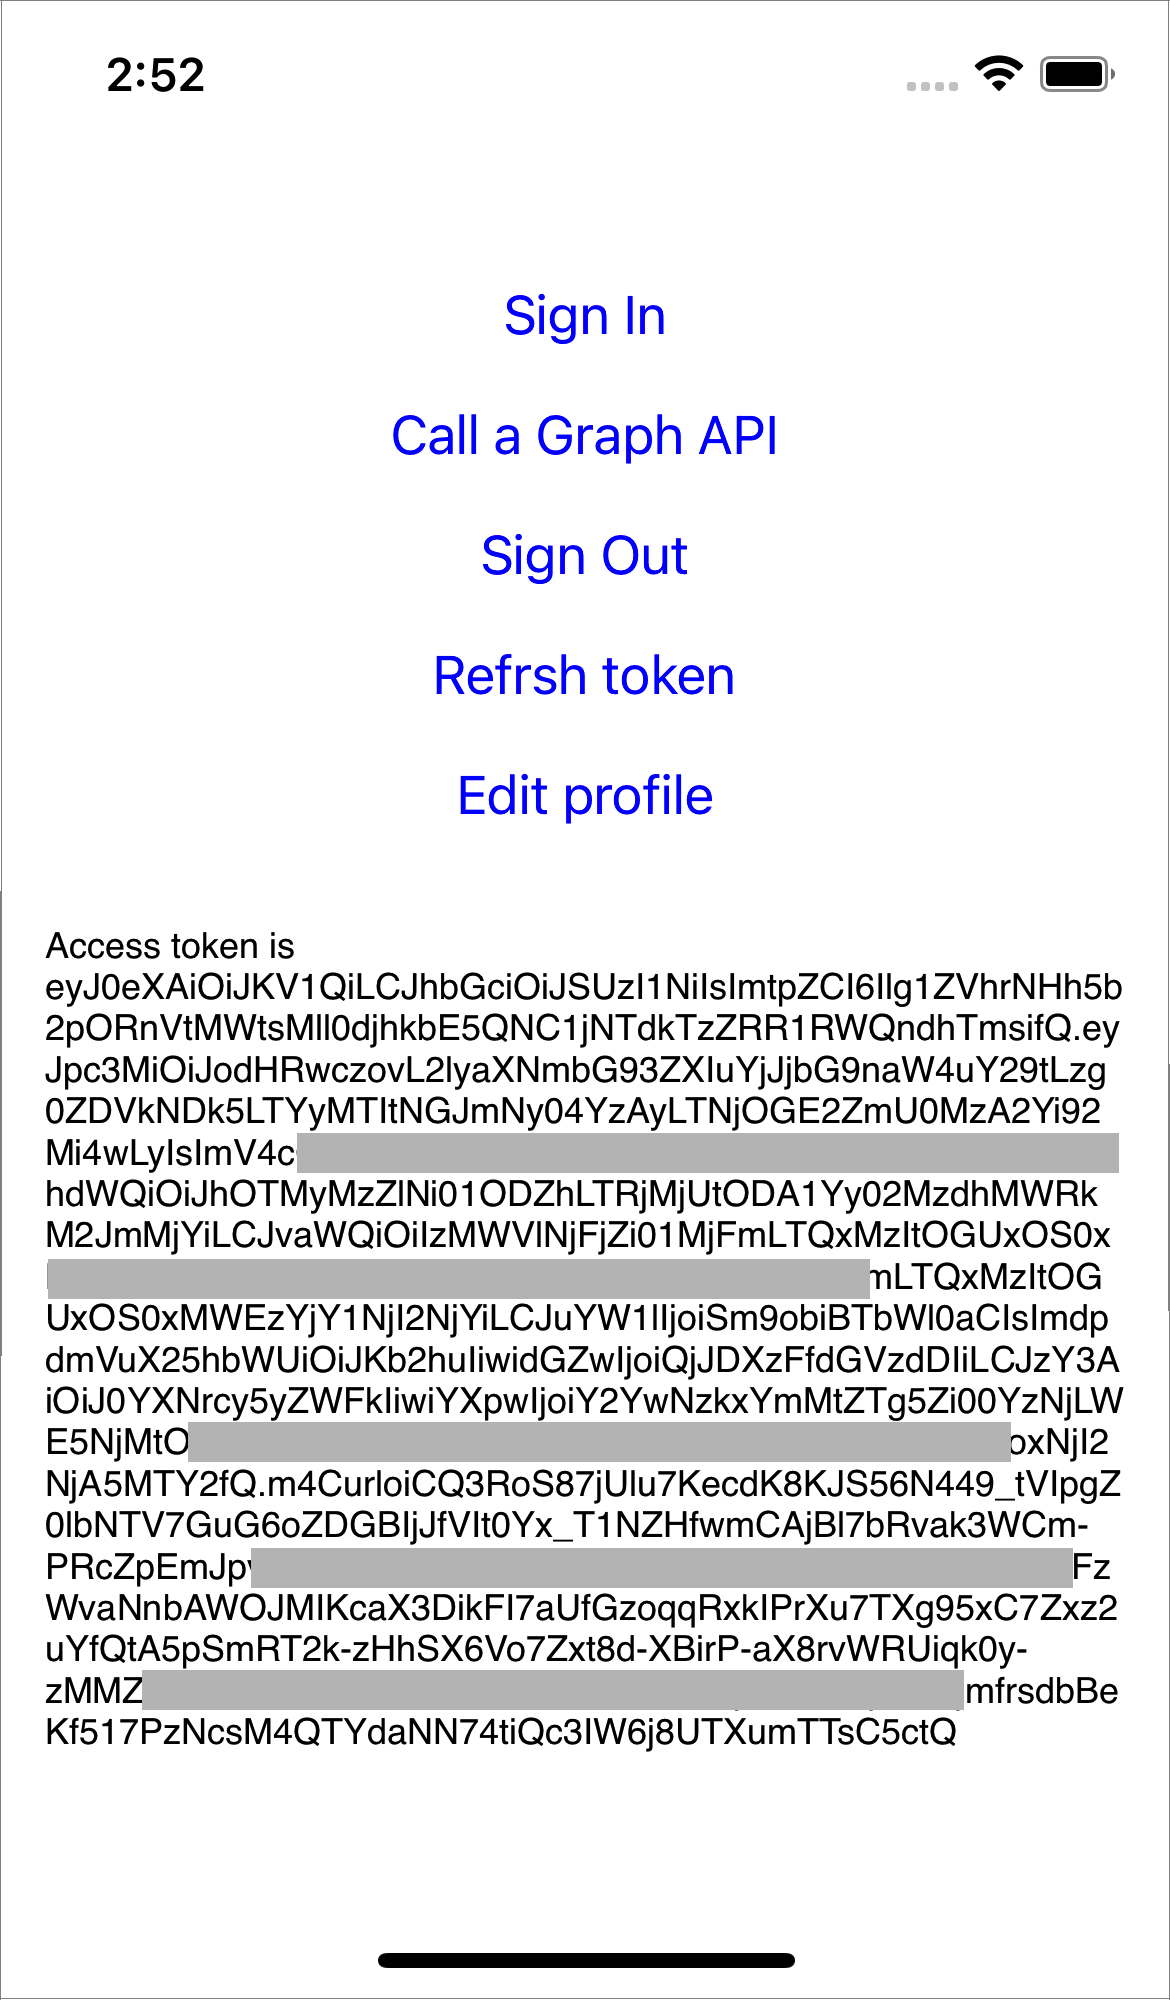 Zrzut ekranu przedstawiający token dostępu Azure AD B2C i identyfikator użytkownika.